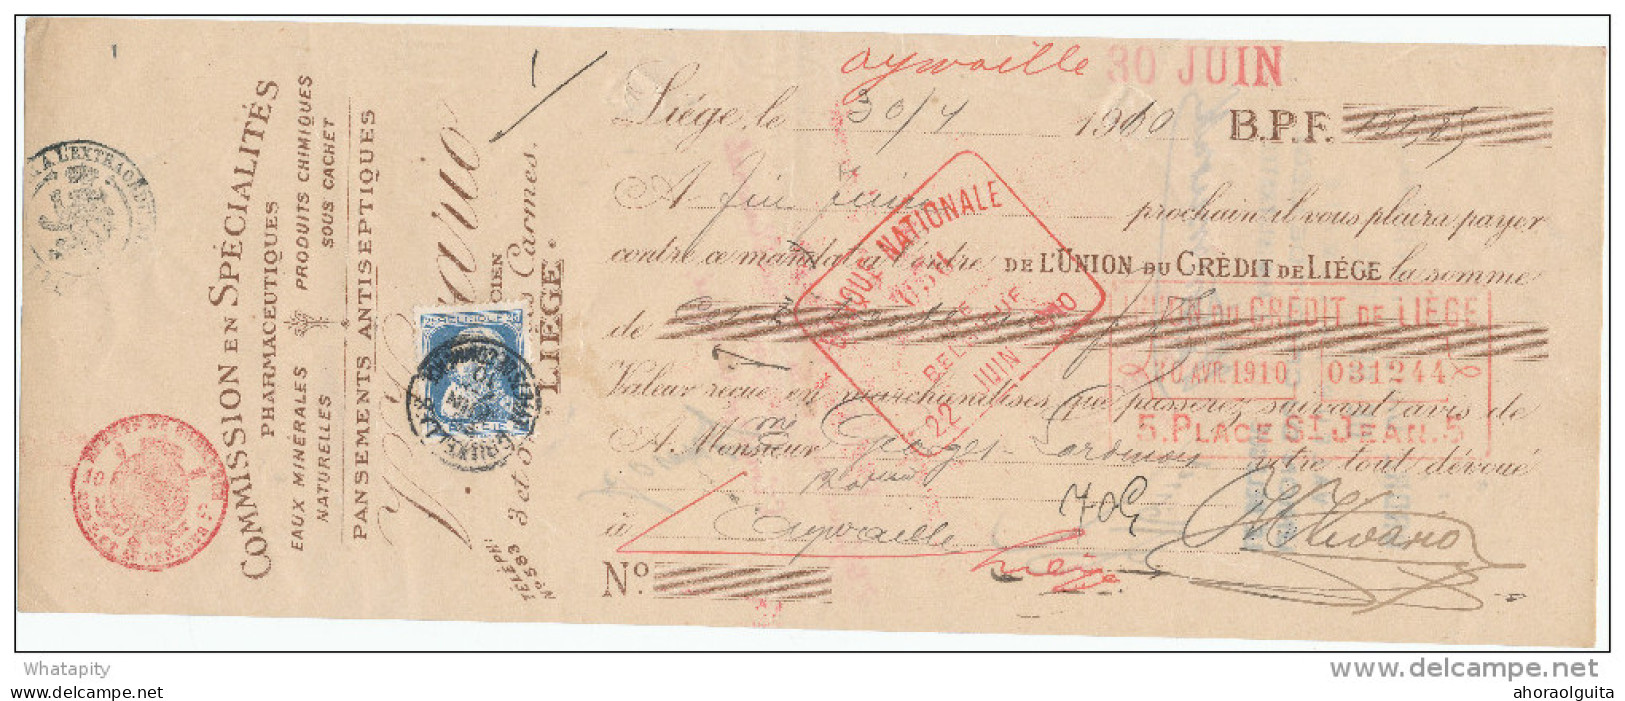 BELGIQUE - Document Financier Via Poste Belge 1910 - Spécialités En Pharmacie Vivario à LIEGE  -- VV429 - Farmacia